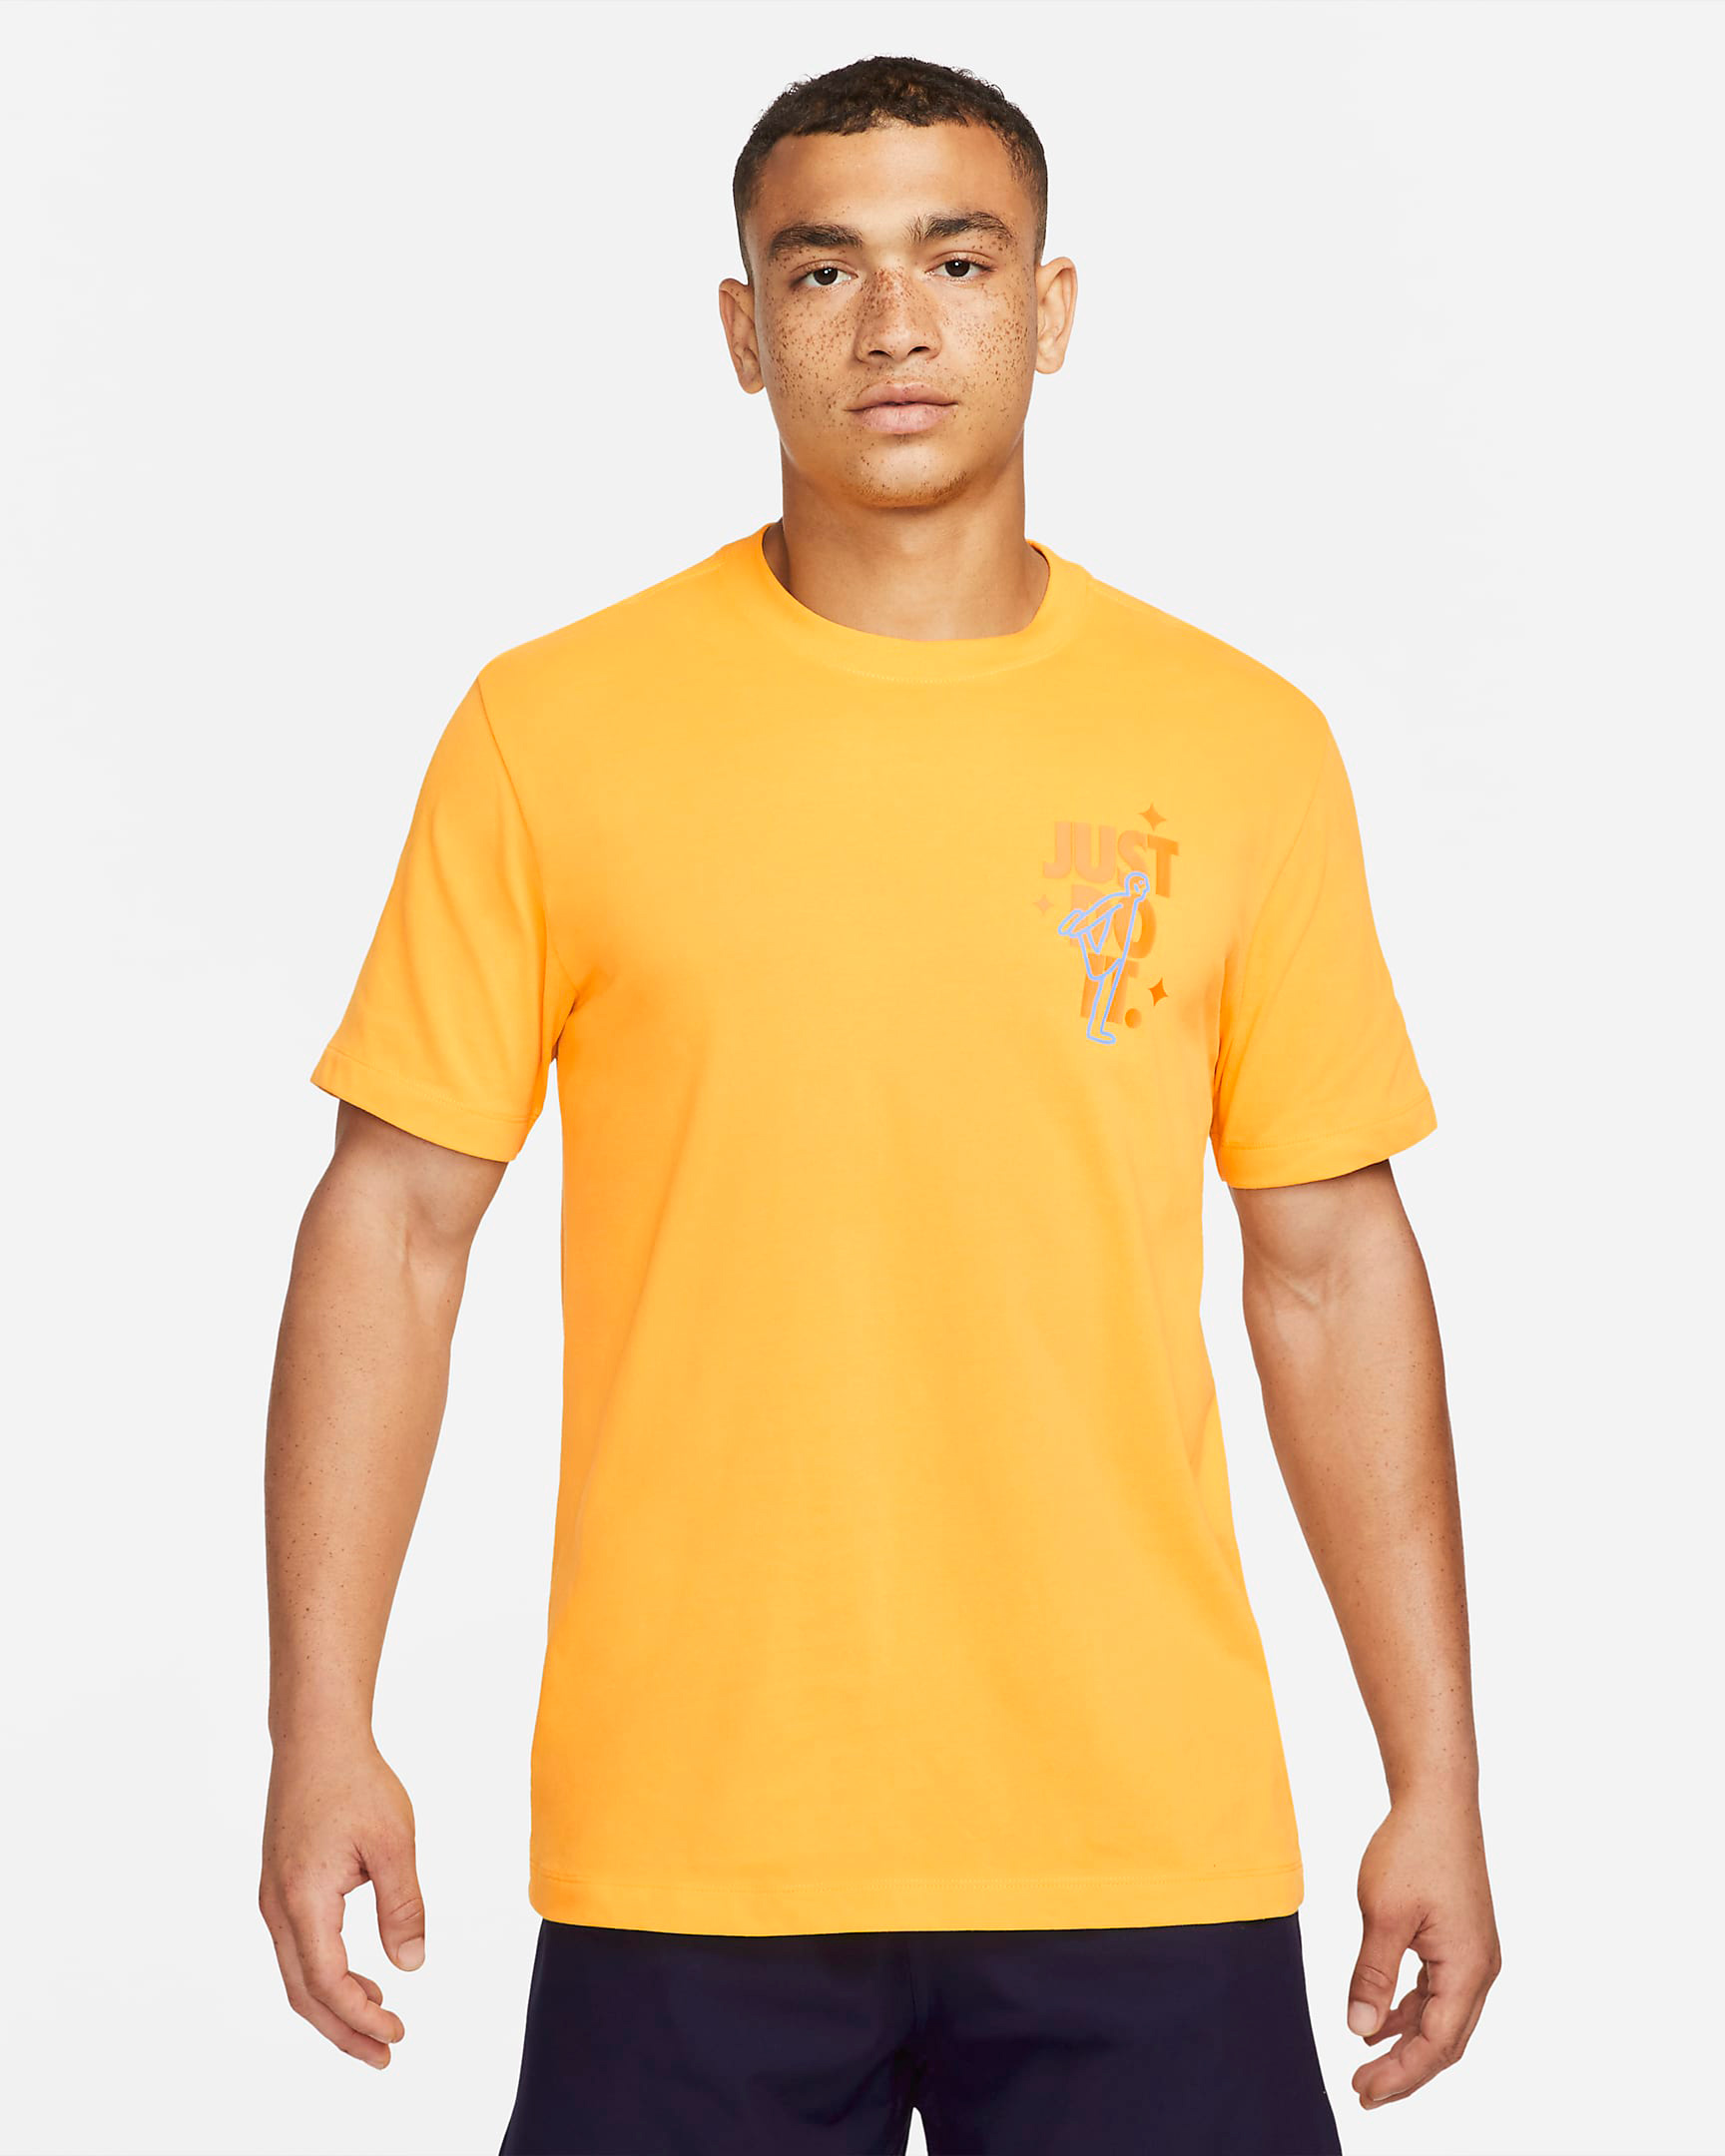 nike-university-gold-jdi-just-do-it-shirt-1